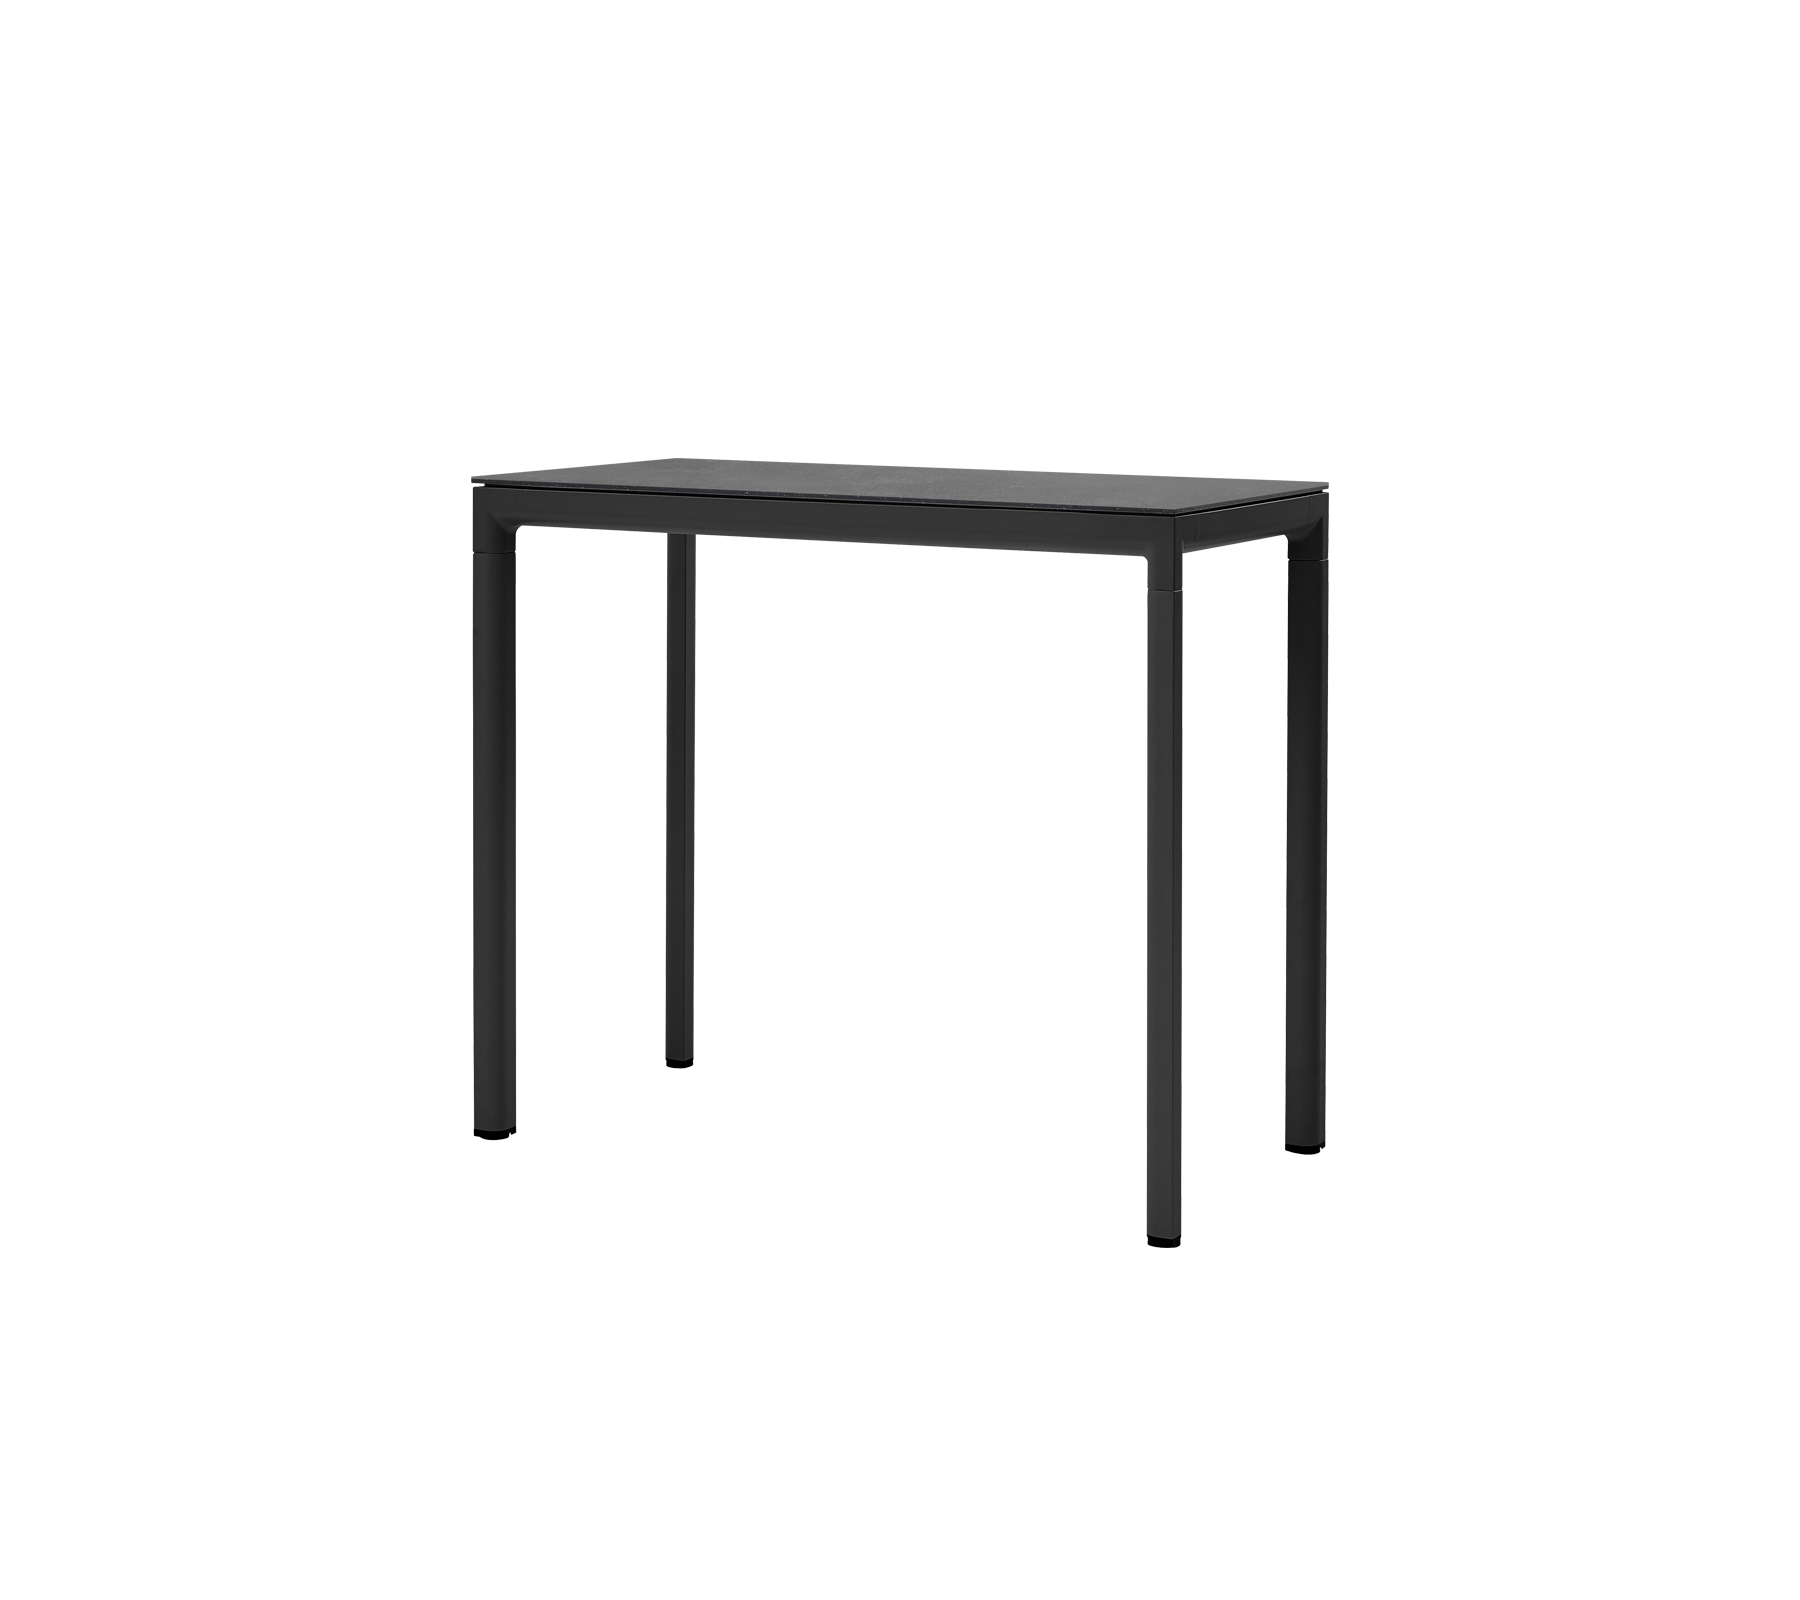 Drop table de bar, 150x75 cm